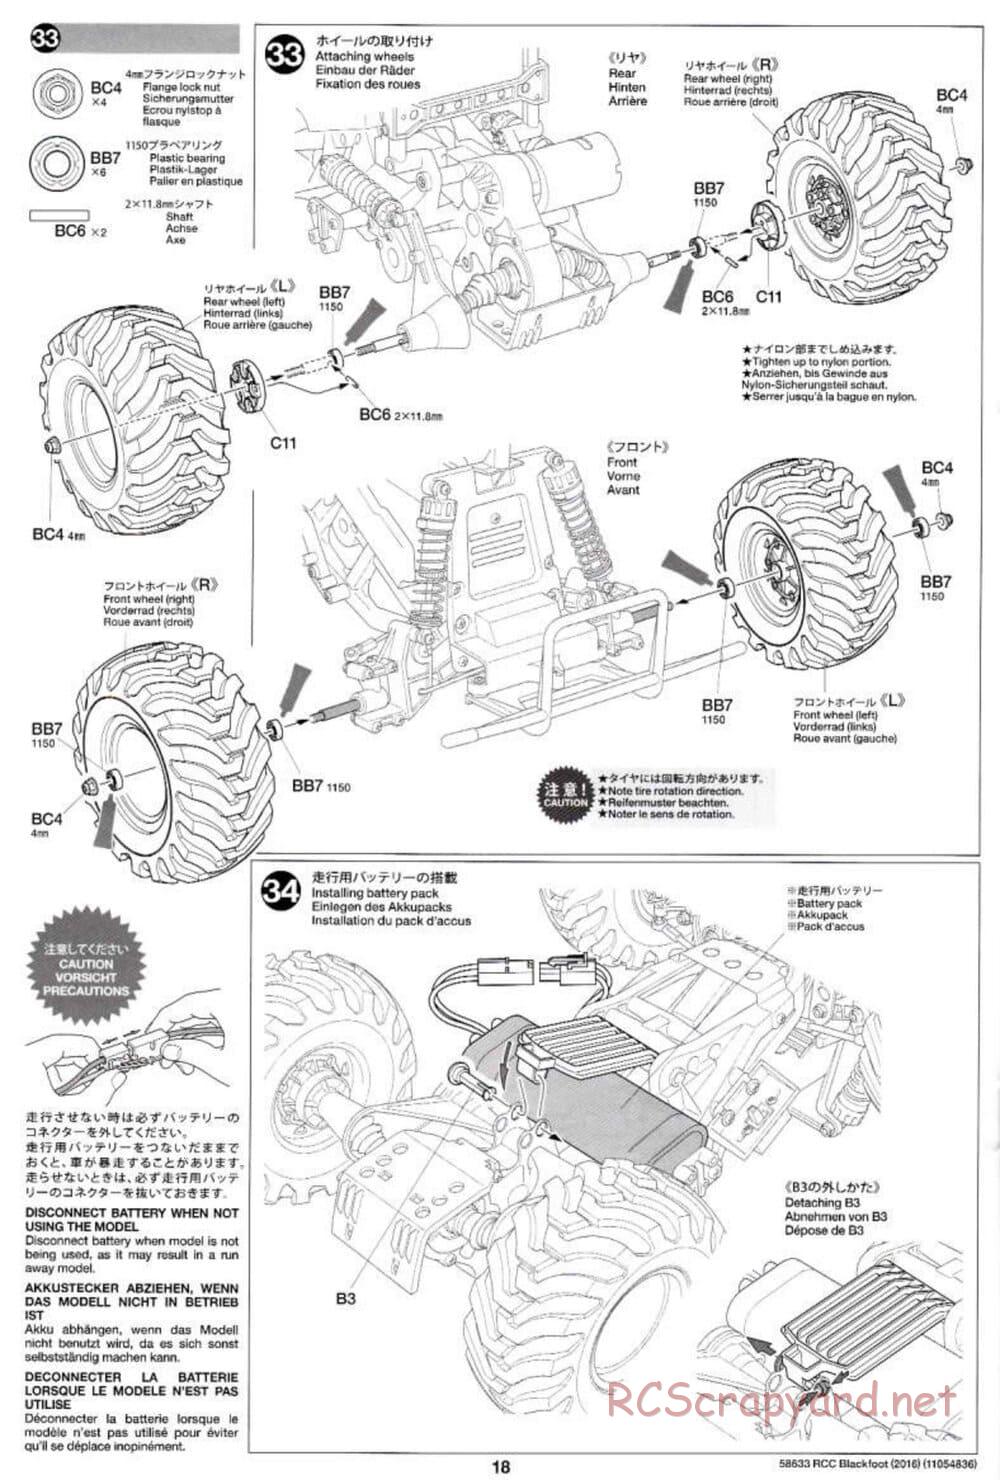 Tamiya - Blackfoot 2016 - ORV Chassis - Manual - Page 18